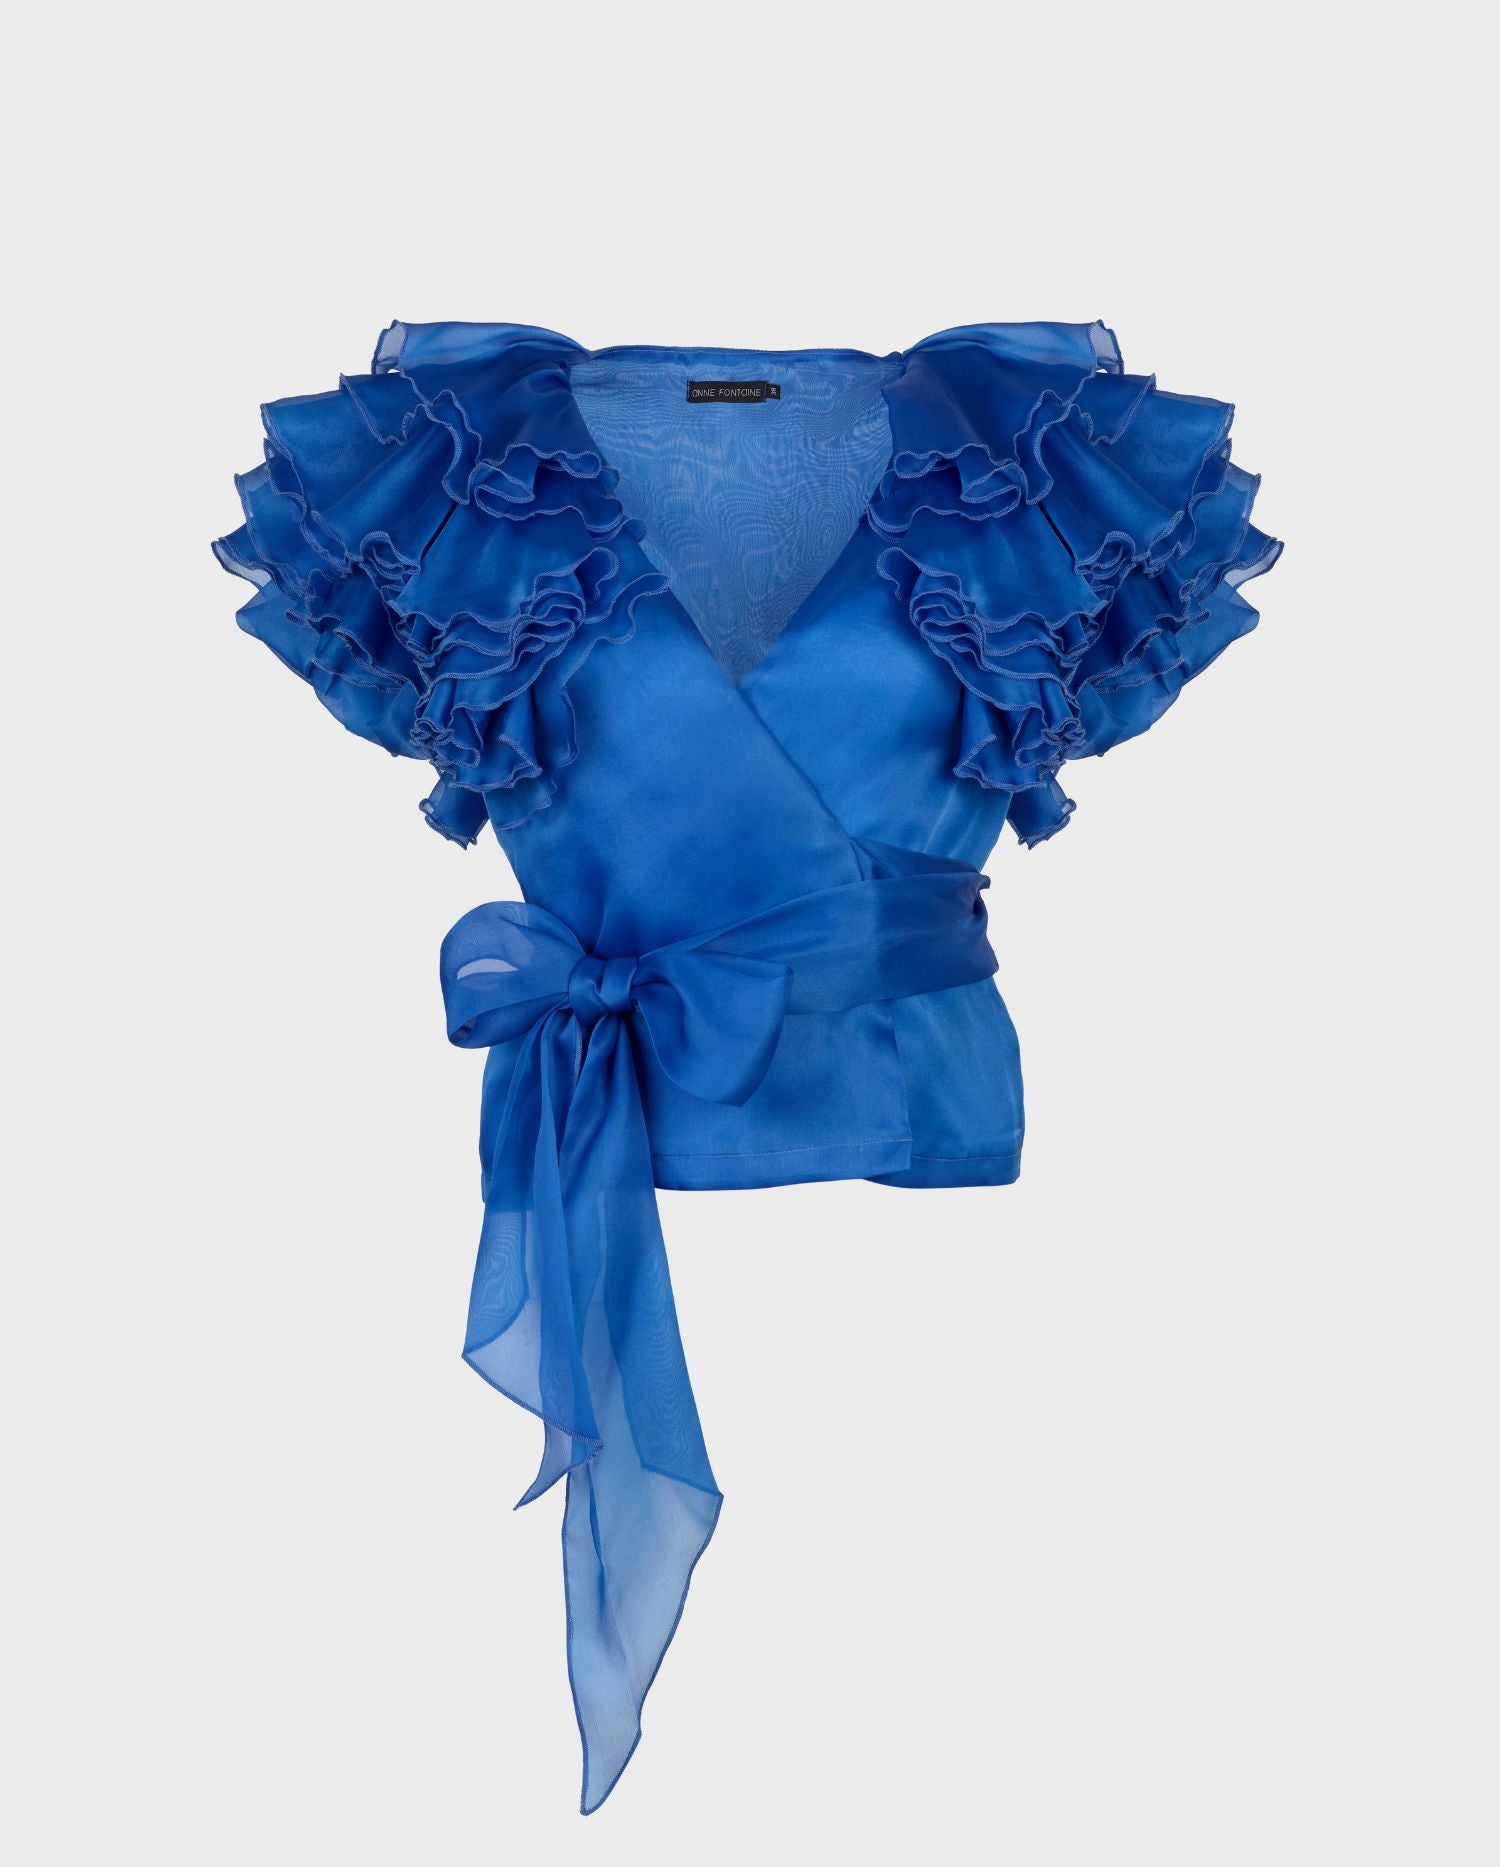 Découvrez la blouse cache-coeur en organza de soie bleu LUZ avec manches à volants superposés